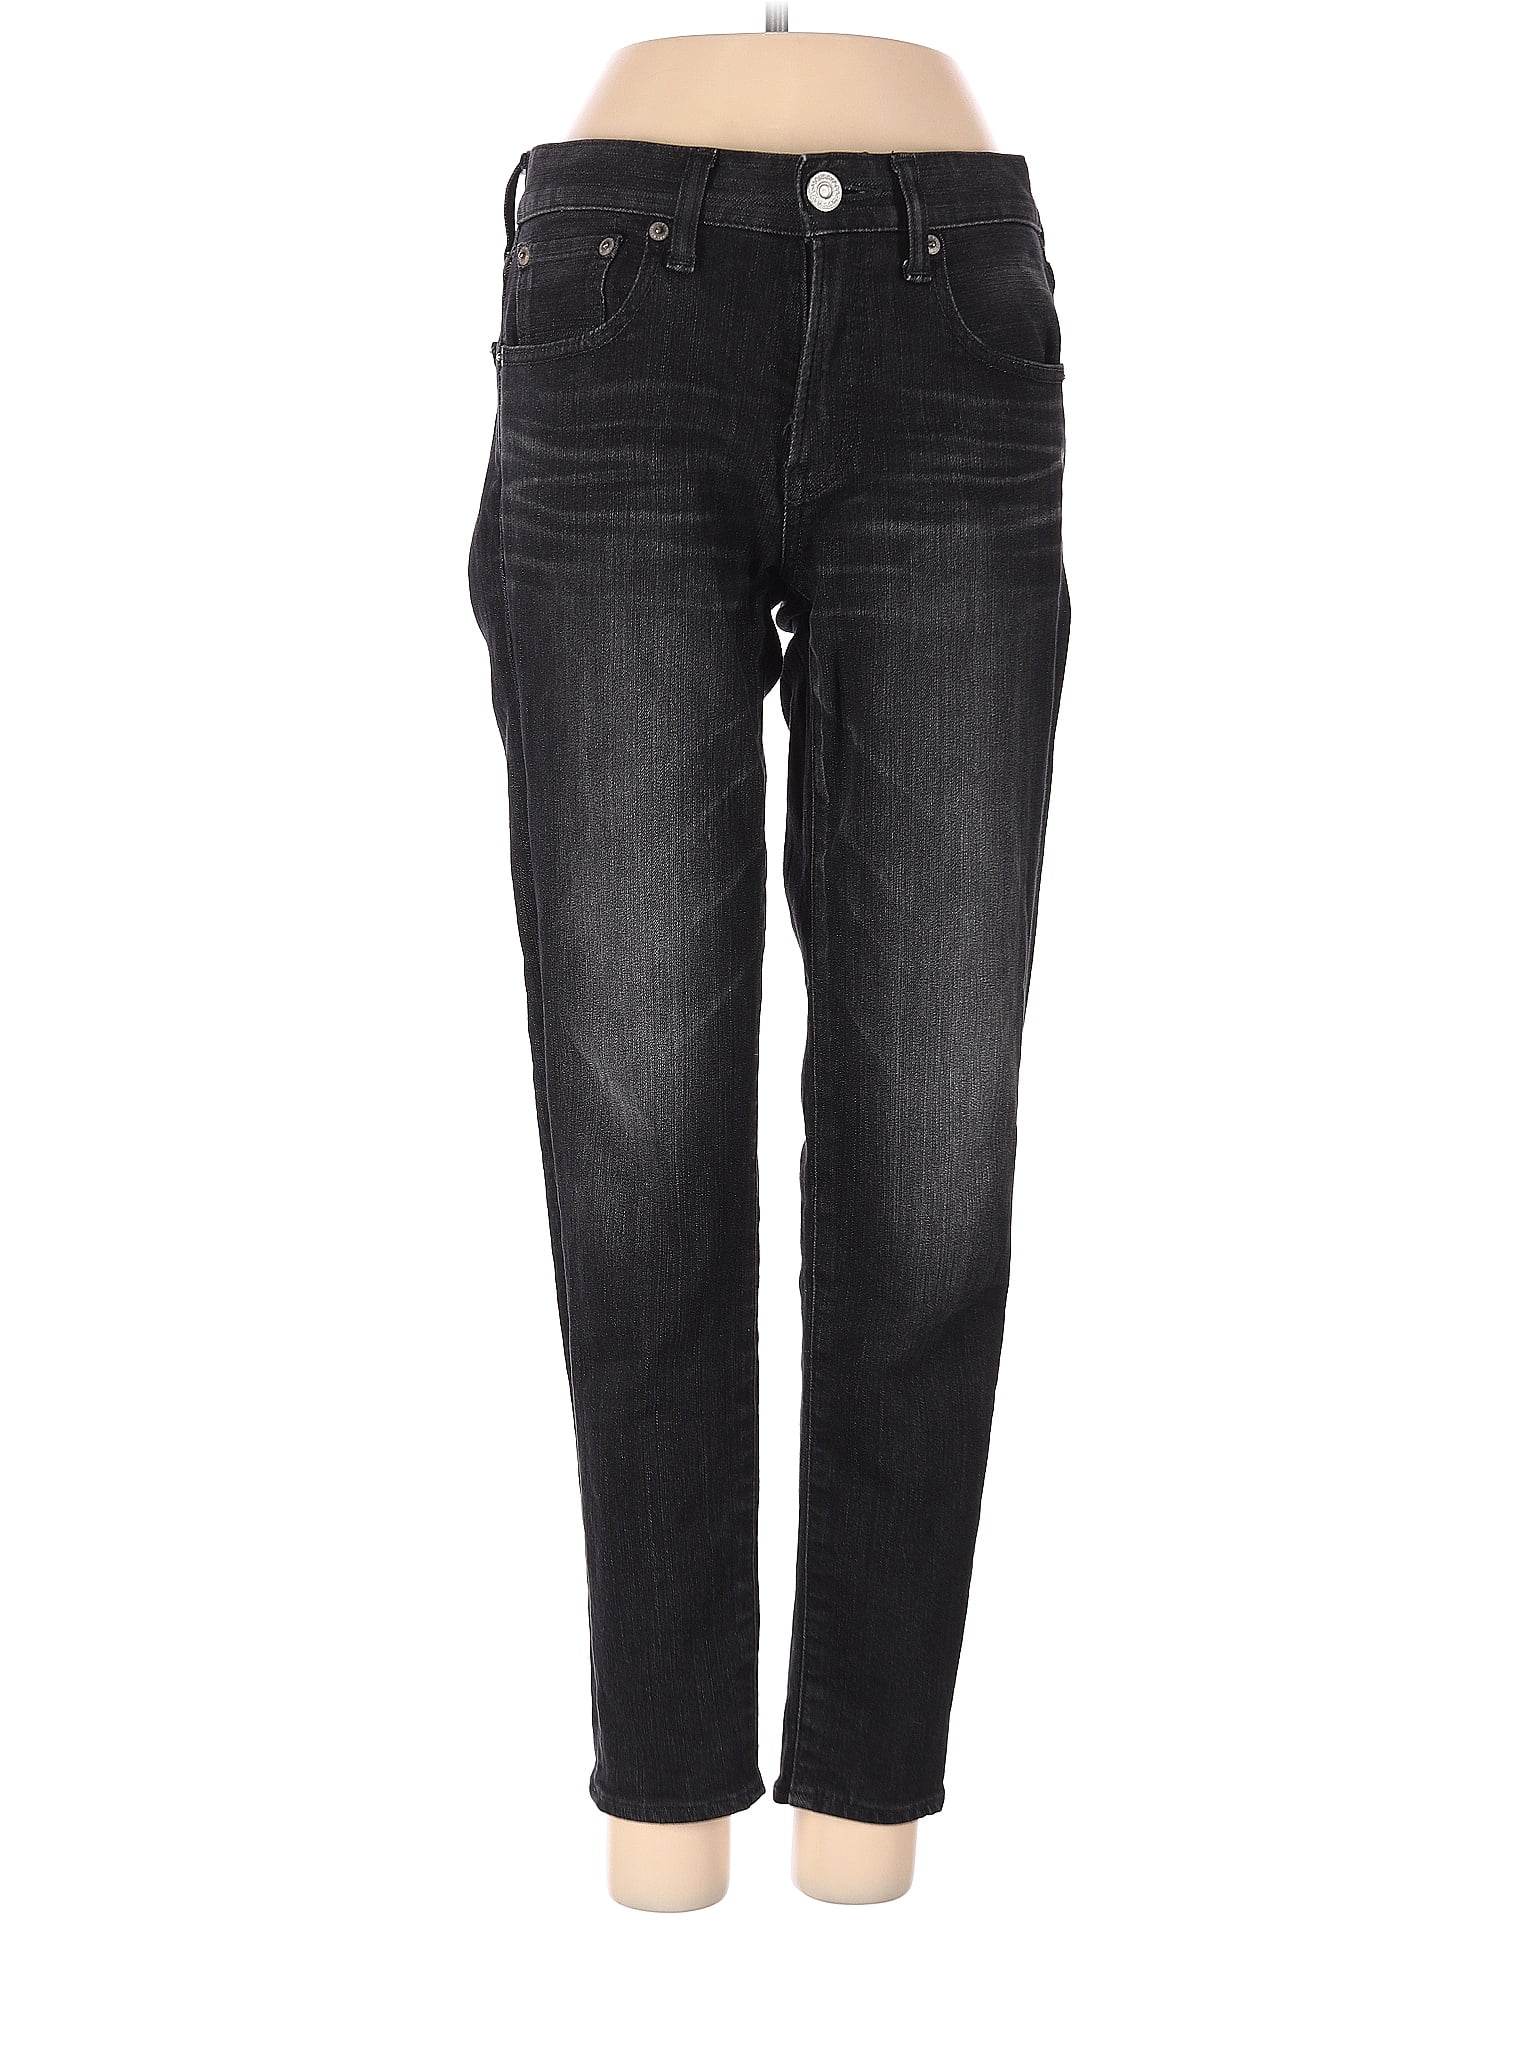 MOUSSY VINTAGE Solid Black Jeans 26 Waist - 81% off | thredUP